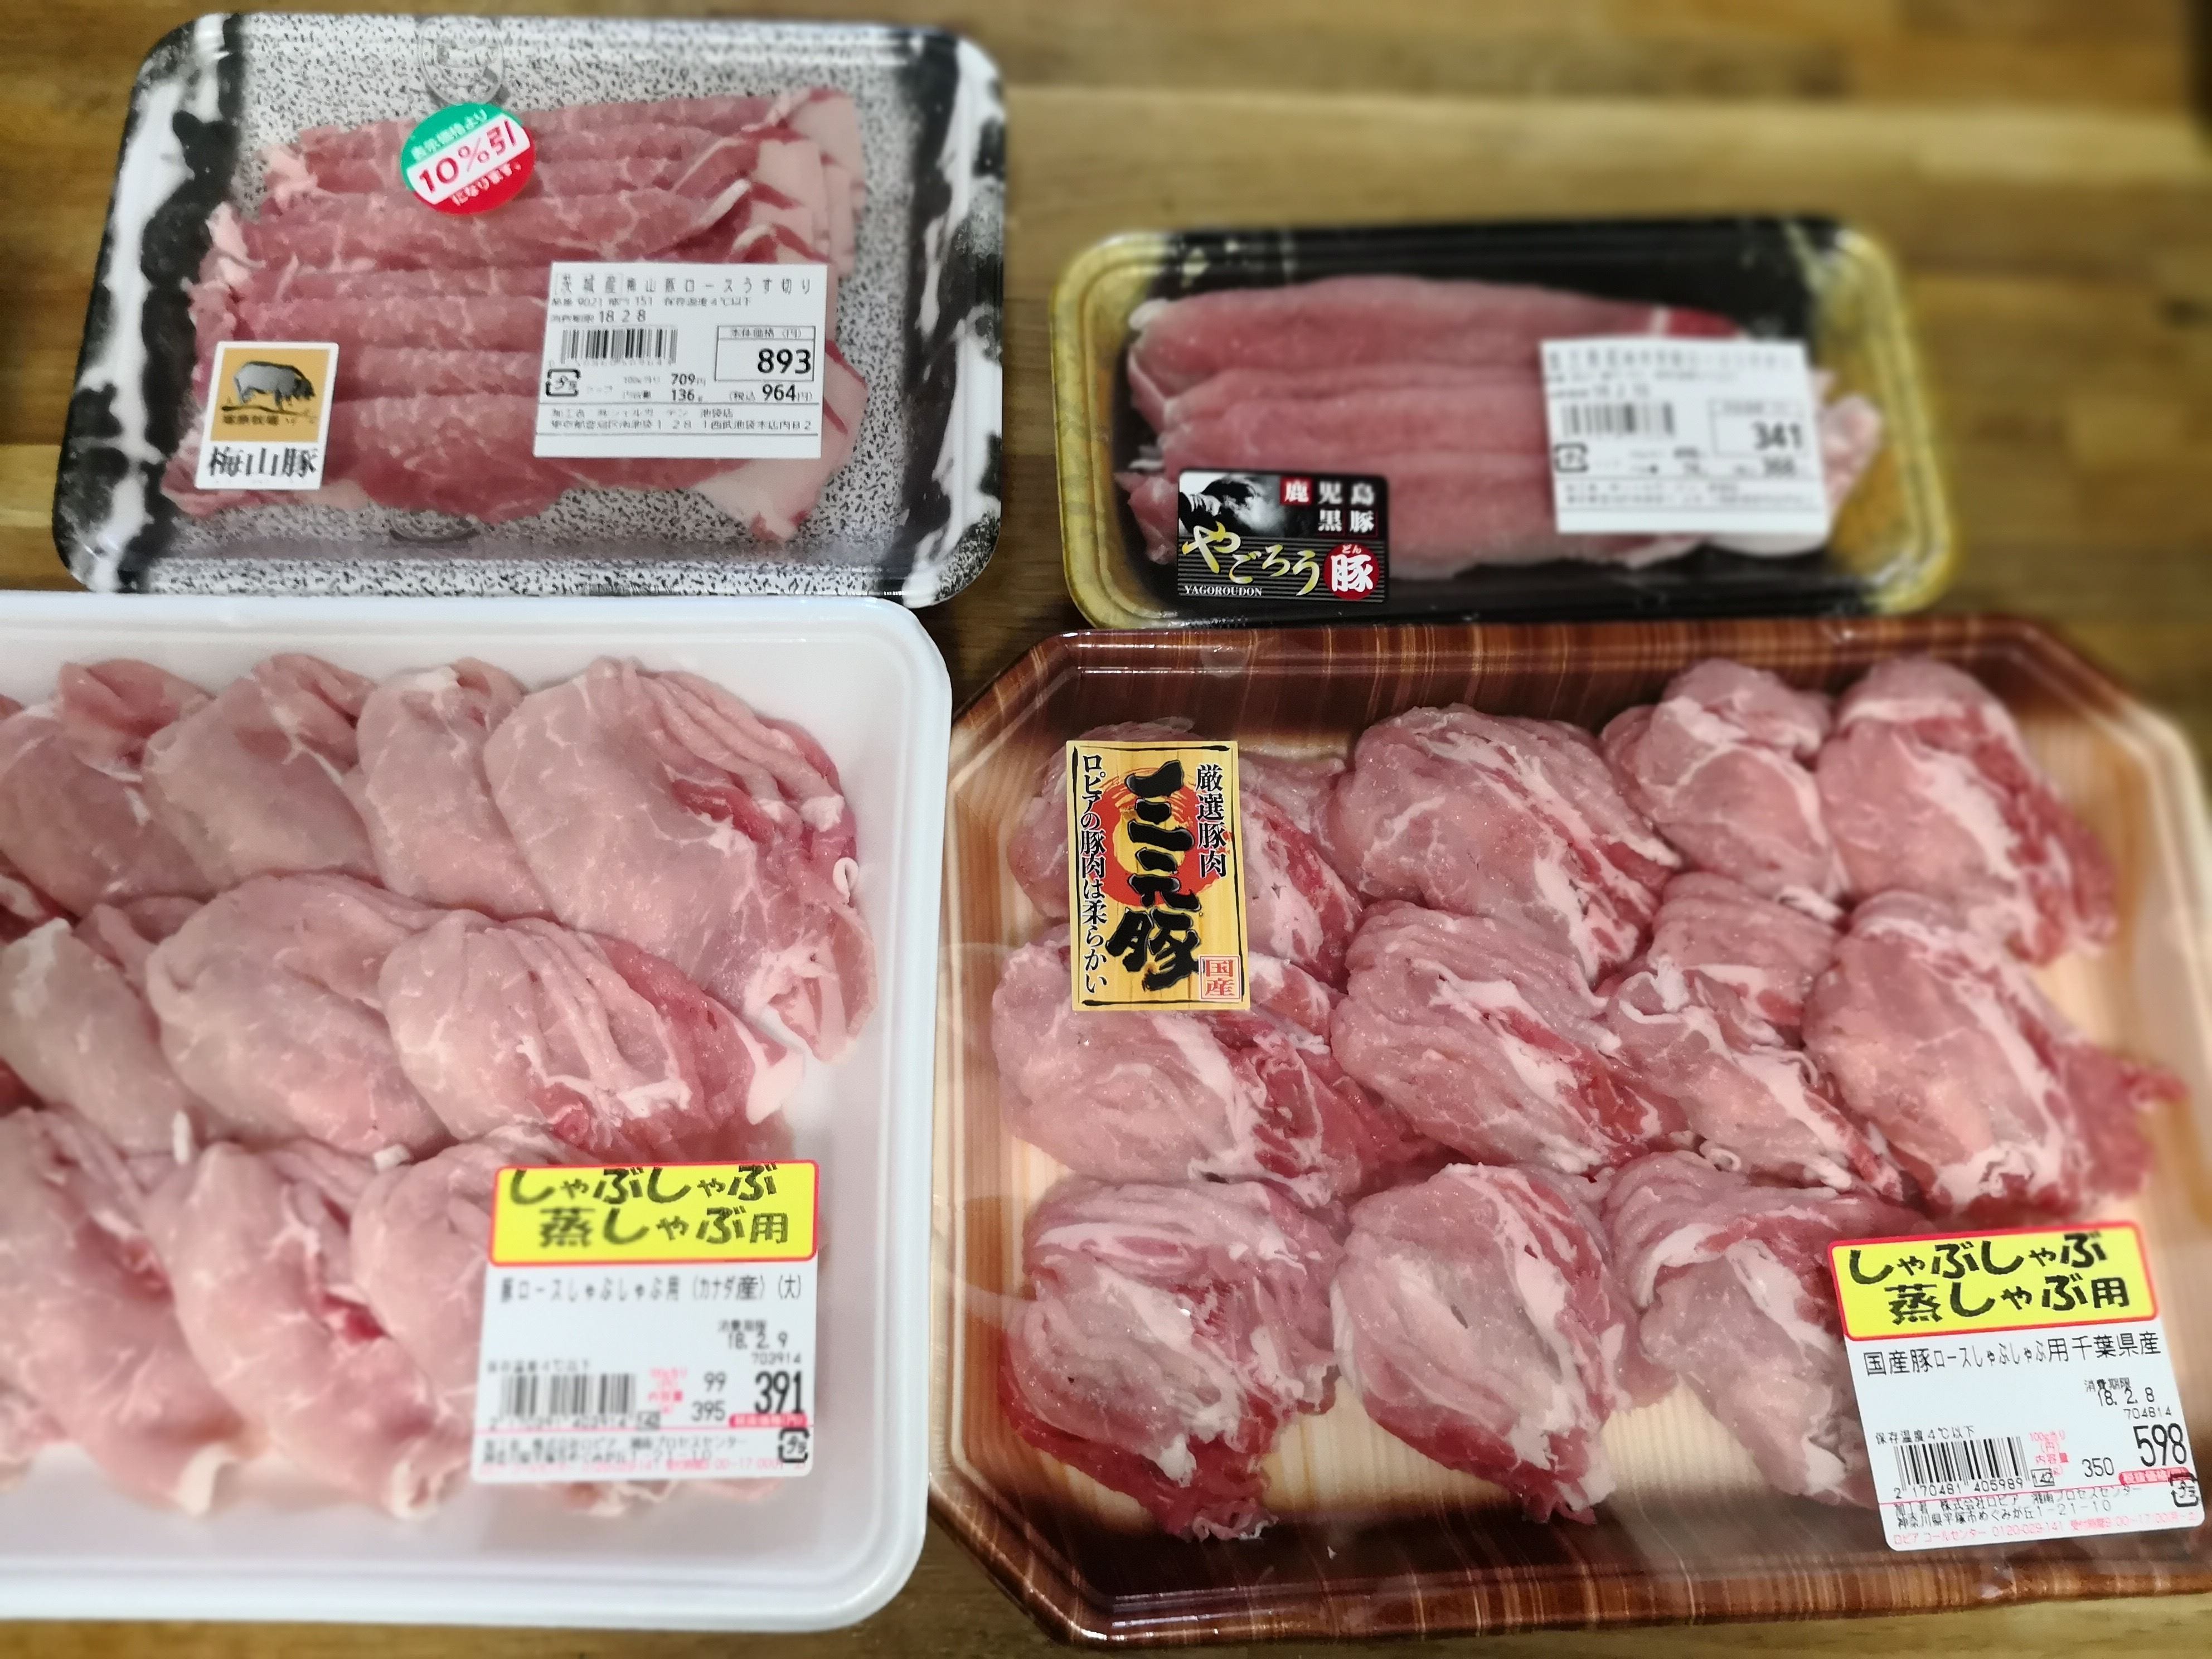 スーパーで売っている安い豚肉と高級豚肉は味が違う 値段別に4種類を食べ比べた結果 ニュースサイトしらべぇ